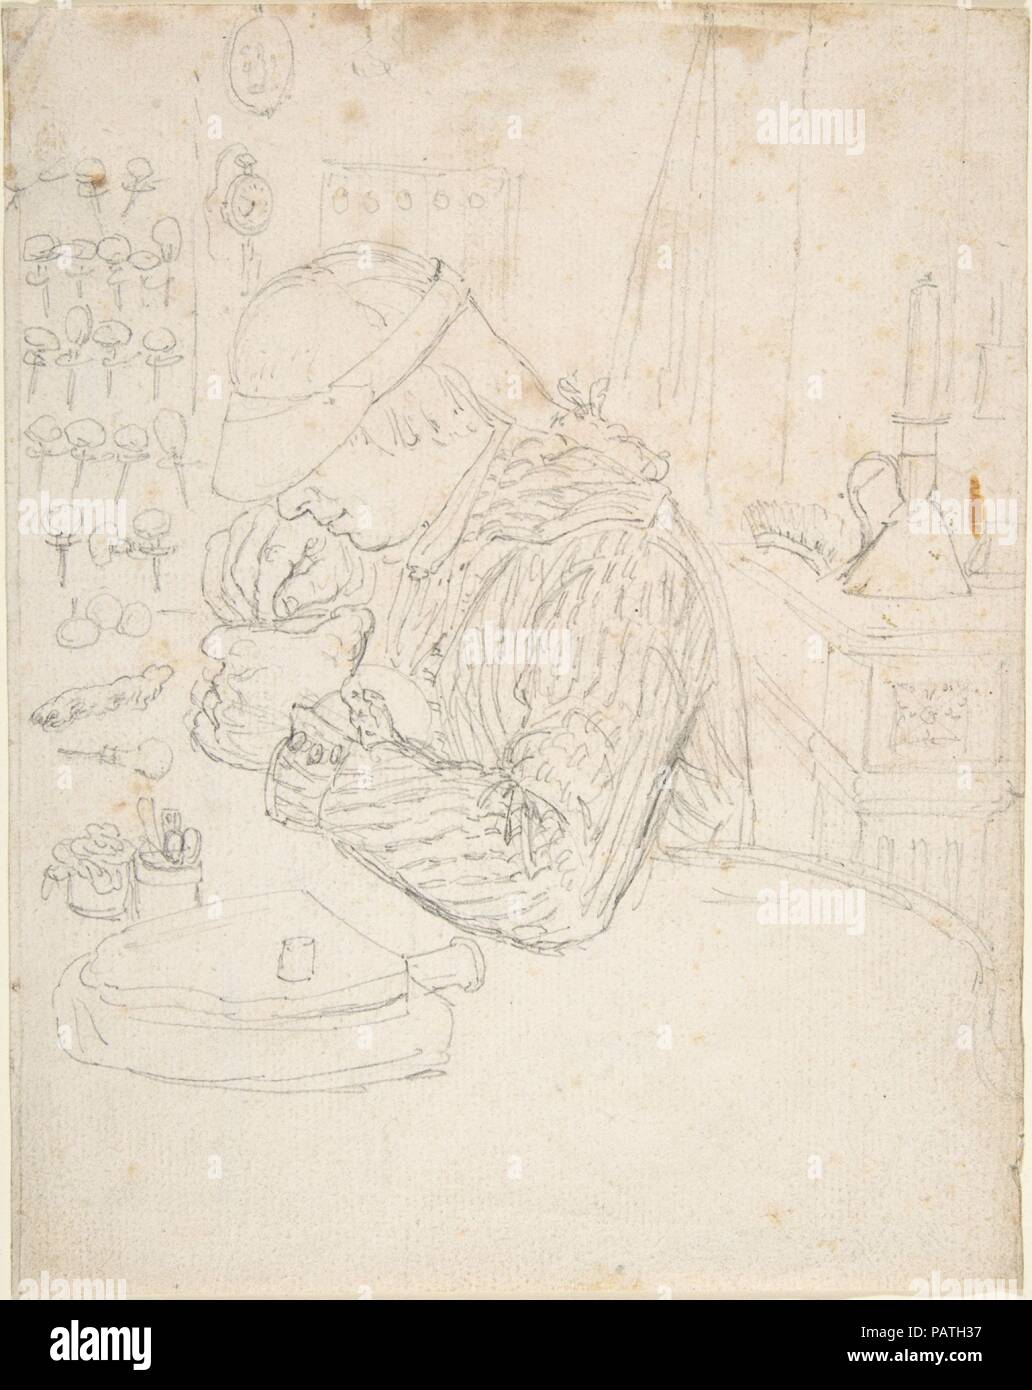 An Engraver. Artist: attributed to Edouard Jeanmaire (French, La Chaux-de-Fonds 1847-1916 La Chaux-de-Fonds). Dimensions: 7 1/8 x 5 5/8 in. (18.1 x 14.3 cm). Date: n.d.. Museum: Metropolitan Museum of Art, New York, USA. Stock Photo